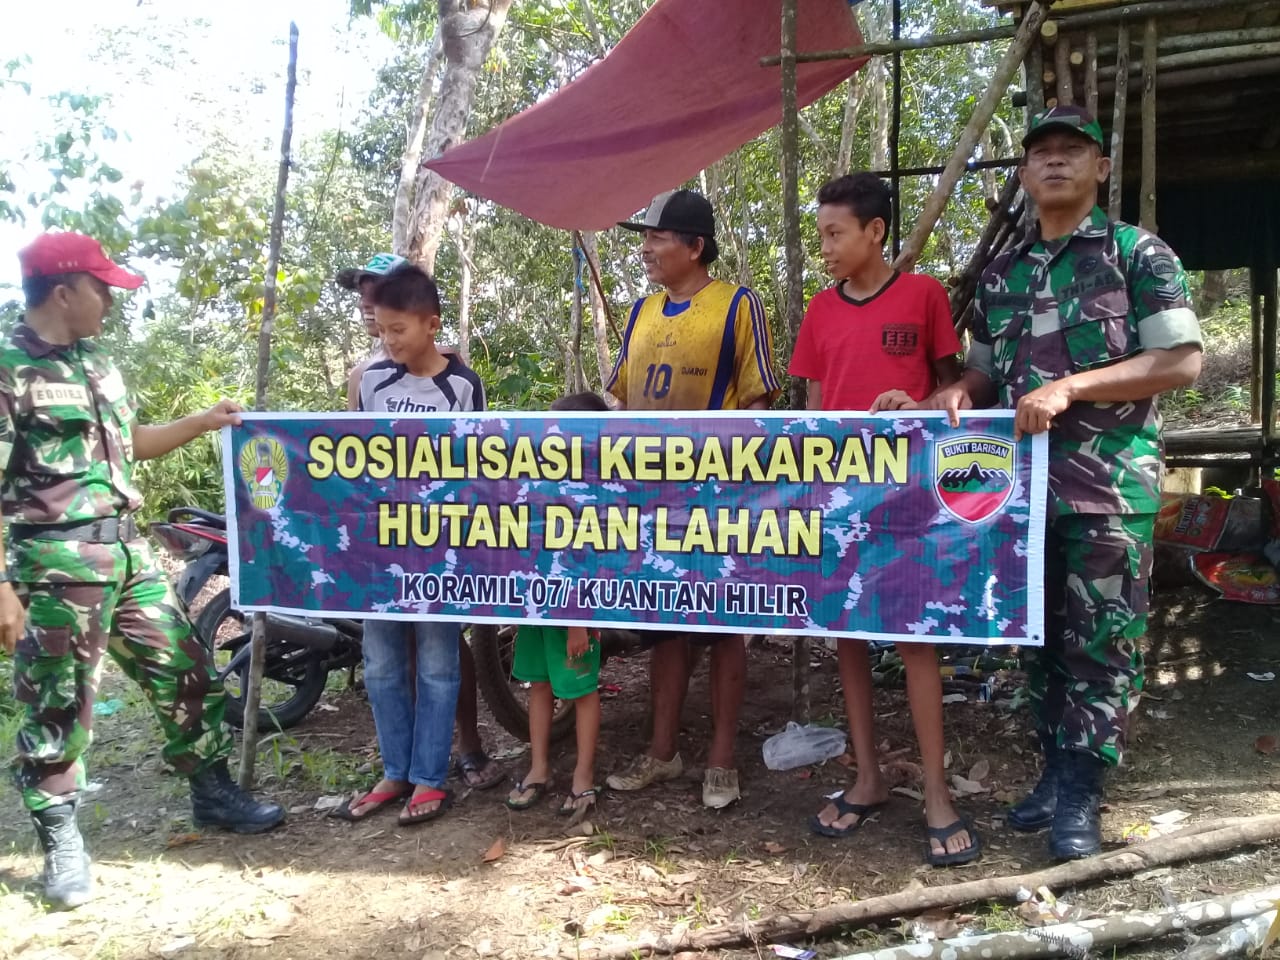 Serda Edy Sastra Dan Sertu C.Manihuruk Sosialisasi Dan Patroli Karhutla Di Desa Sungai Langsat Kecamatan Pangean.